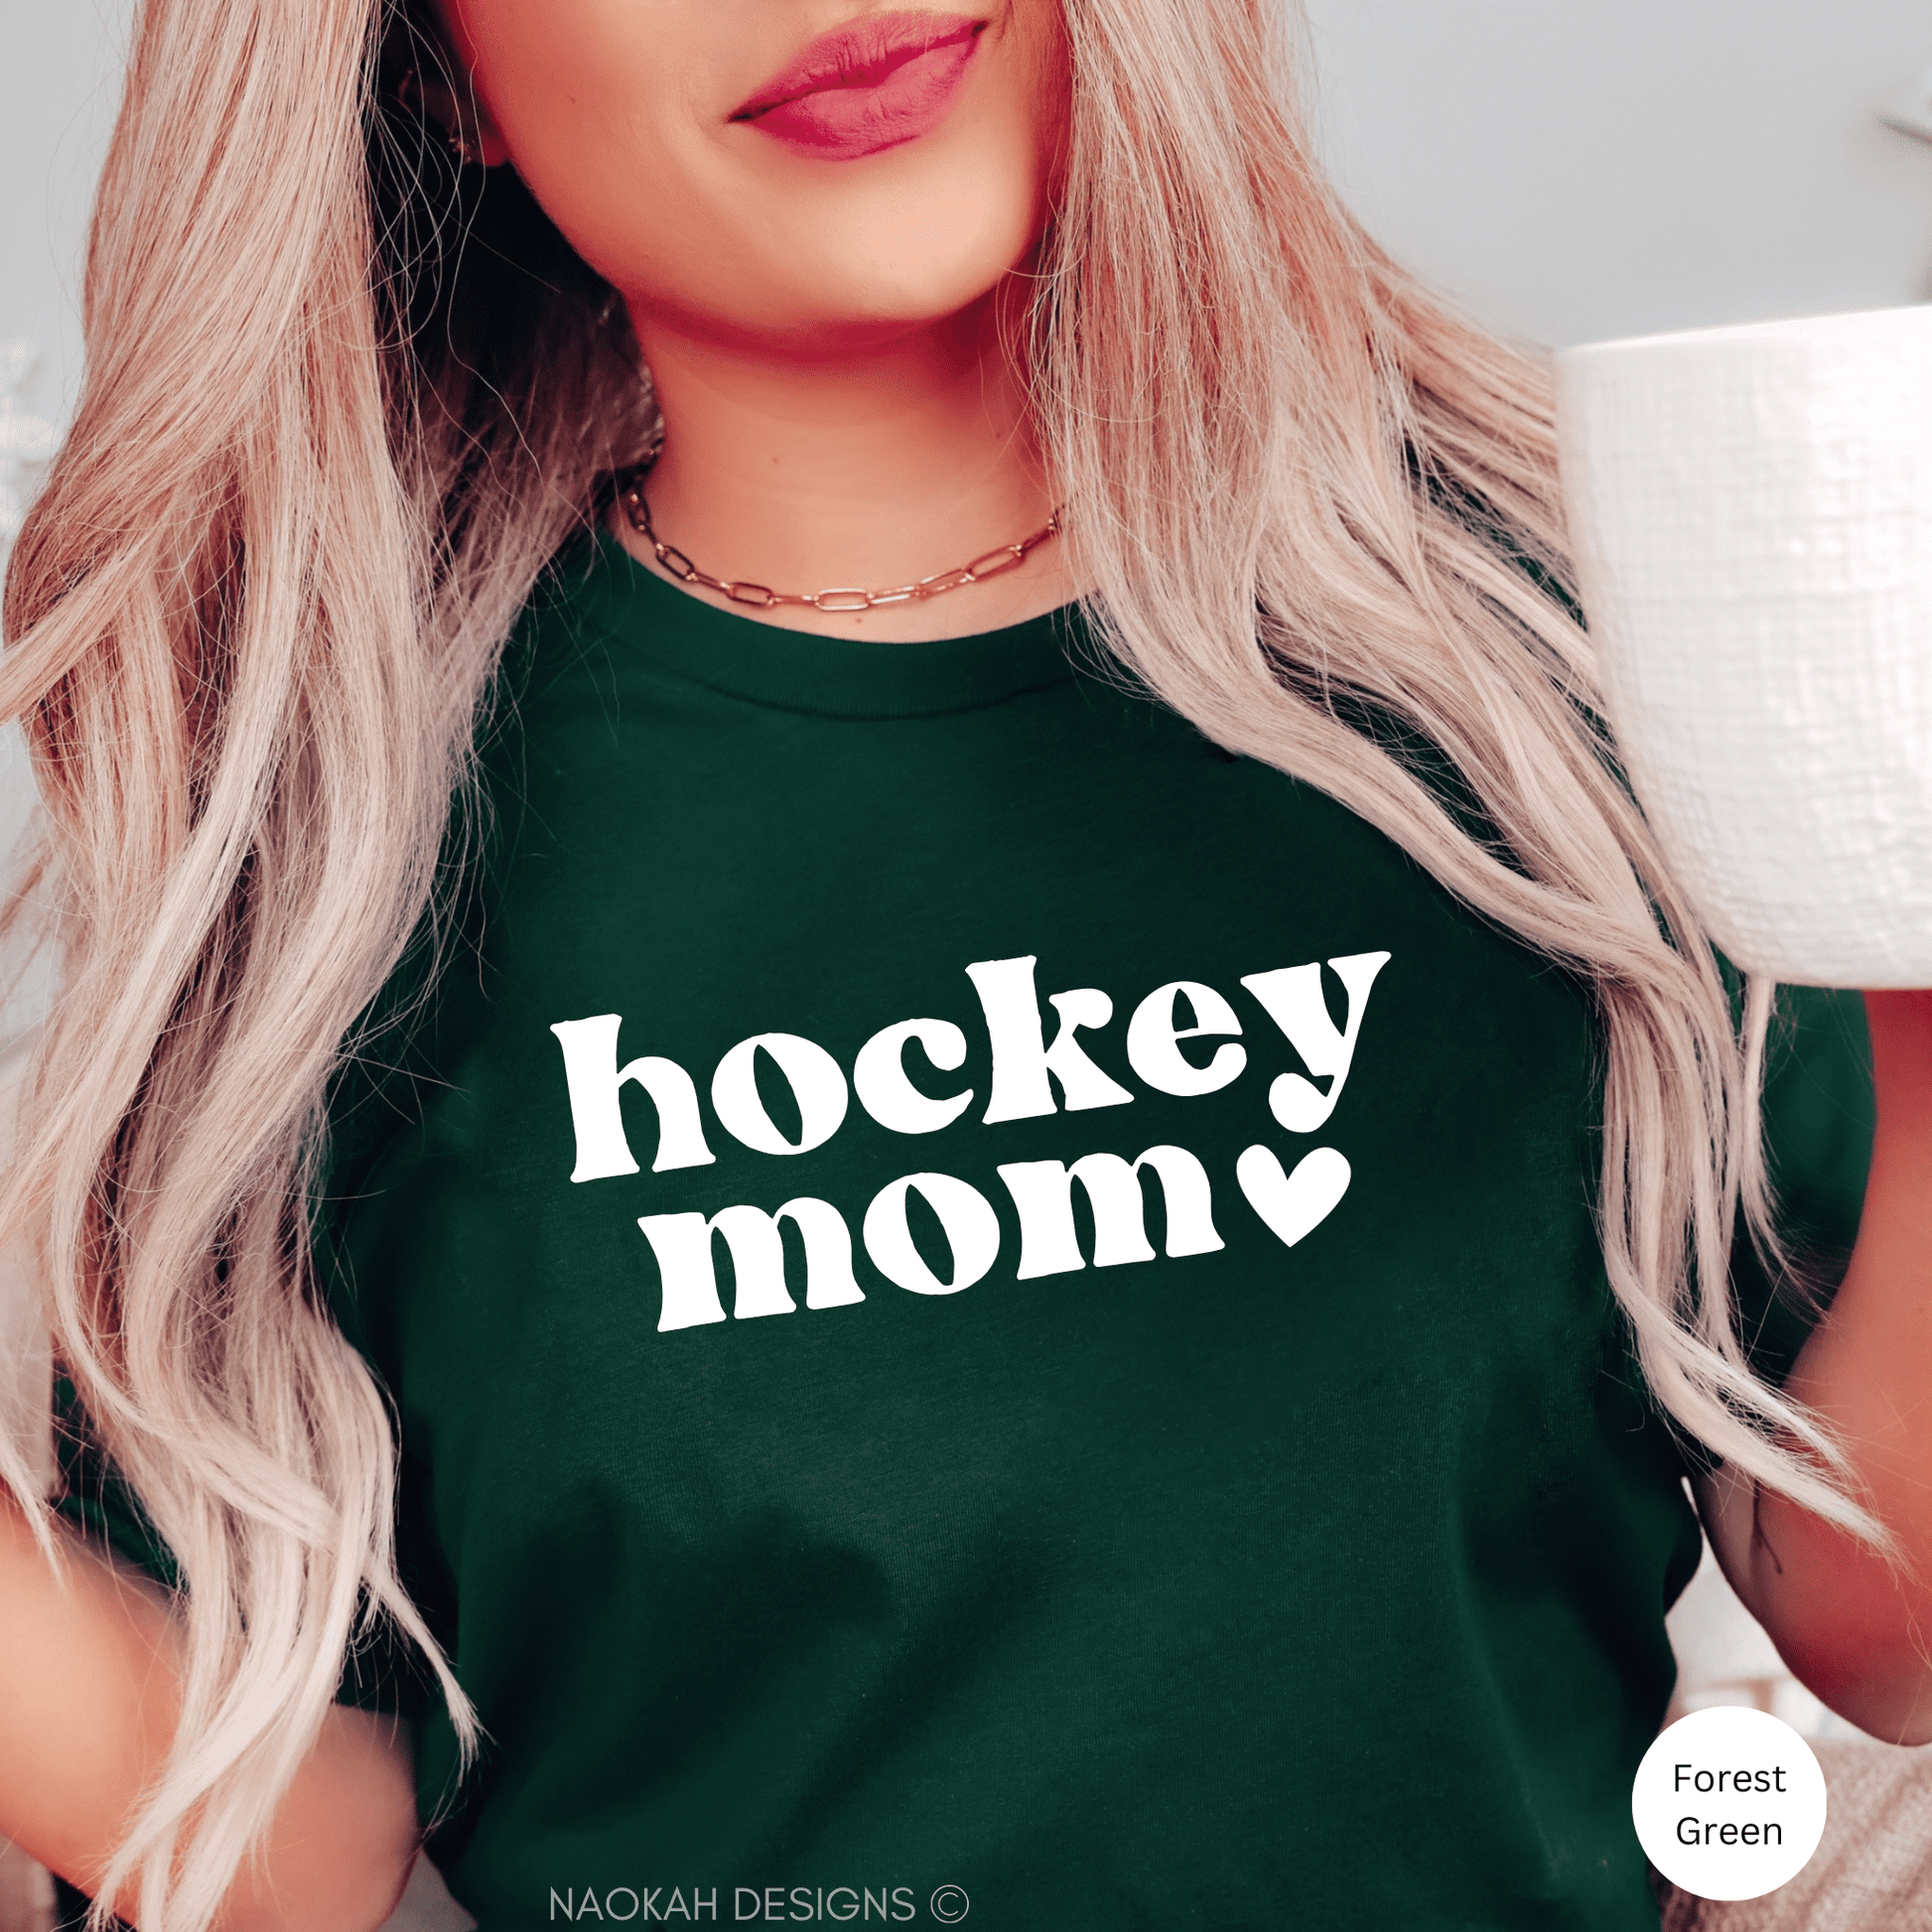 Hockey mom tshirt, Livin That Hockey Mom Life Shirt, Hockey Life Shirt, Hockey Mom Gear, Hockey Gifts for Mom, Hockey Support Shirt, Hockey Gift, Unisex Shirt